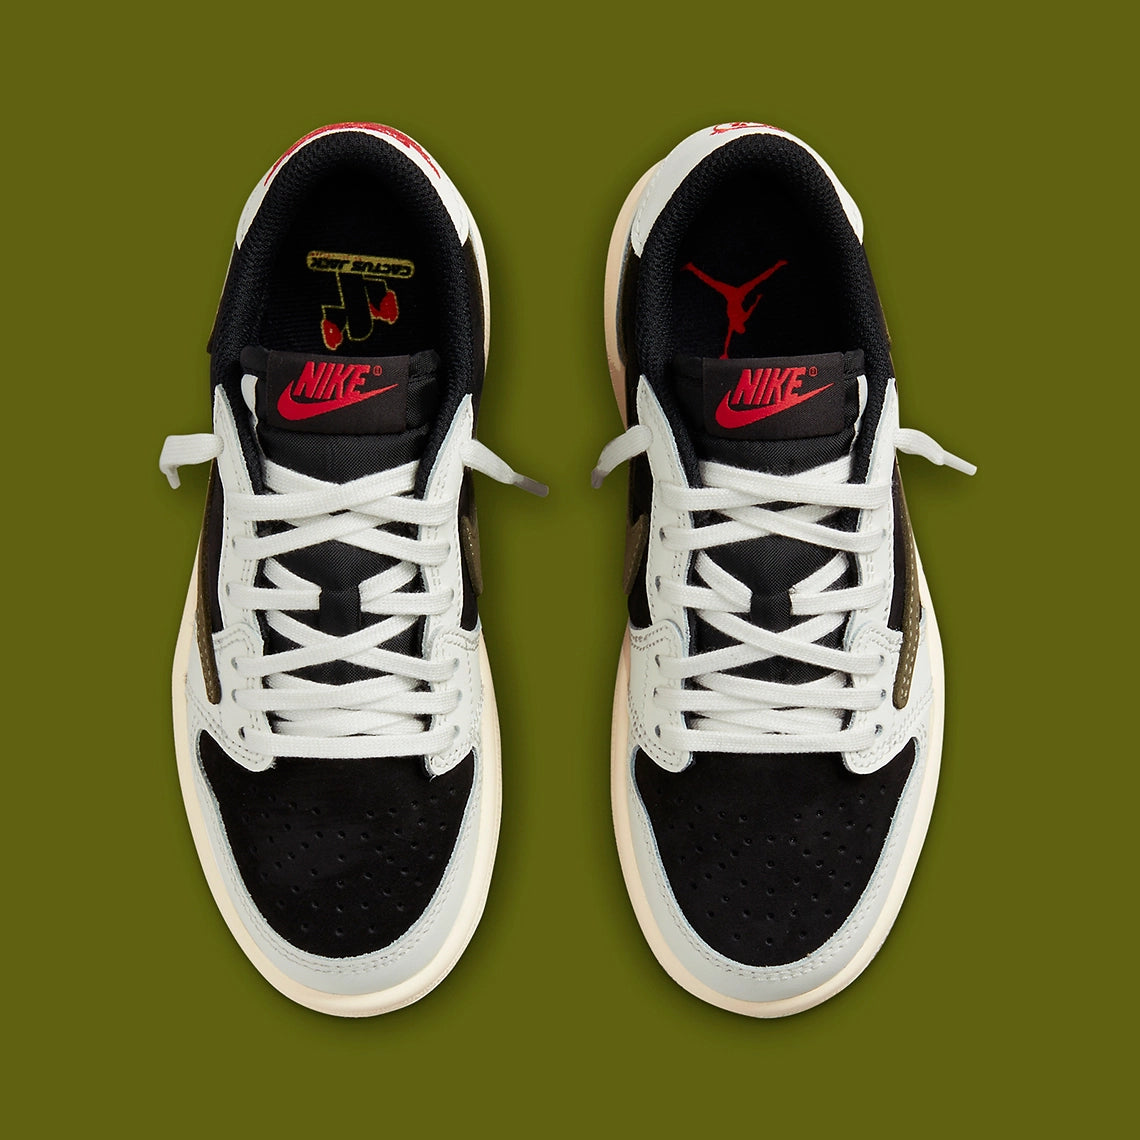 オフィシャル通販サイト Travis Scott × Nike PS AirJordan1 LowOG